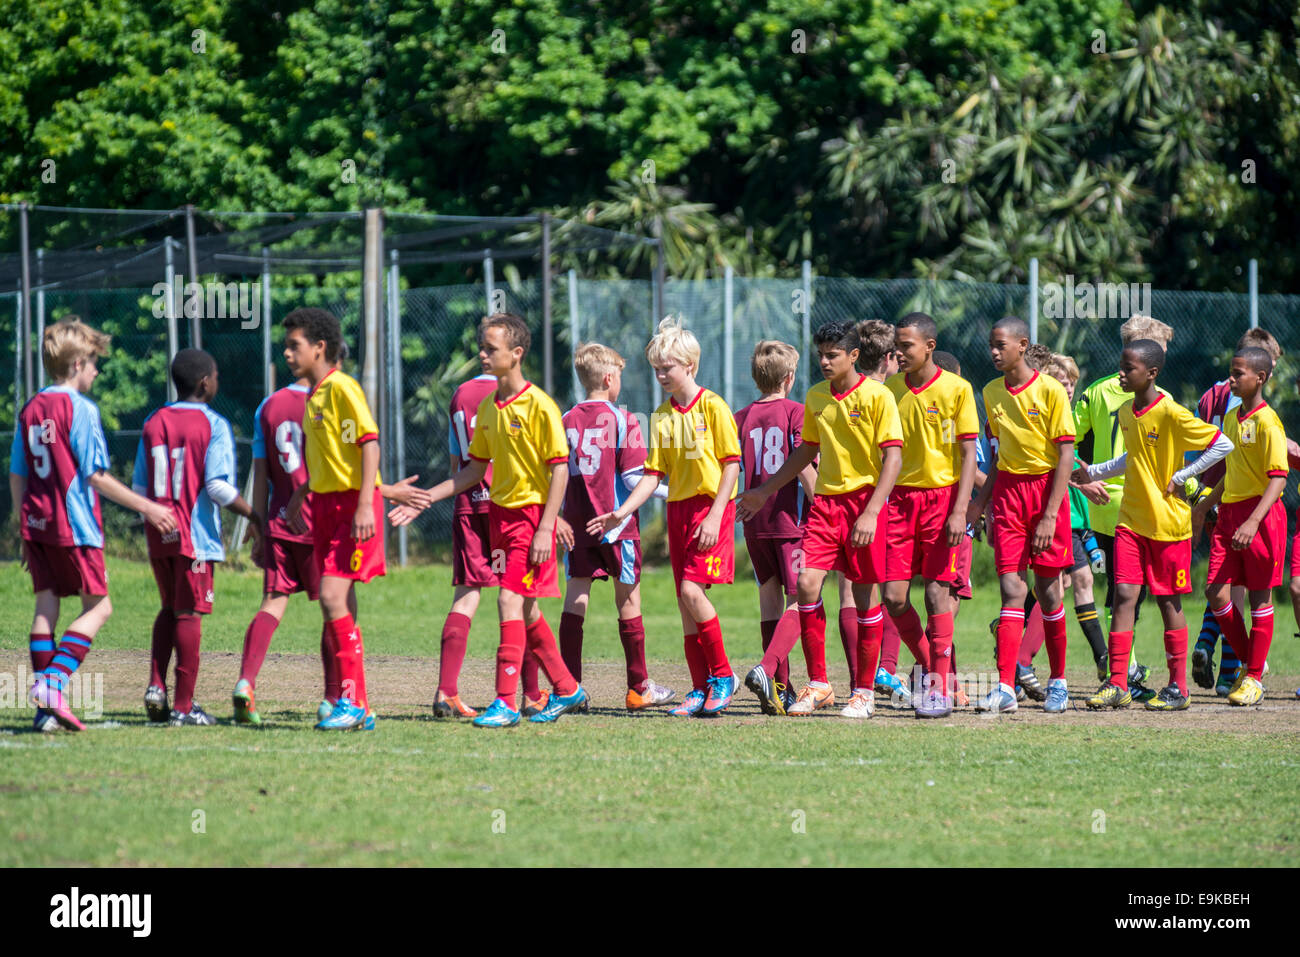 Les jeunes joueurs de football (U13) saluent après le match , Le Cap, Afrique du Sud Banque D'Images